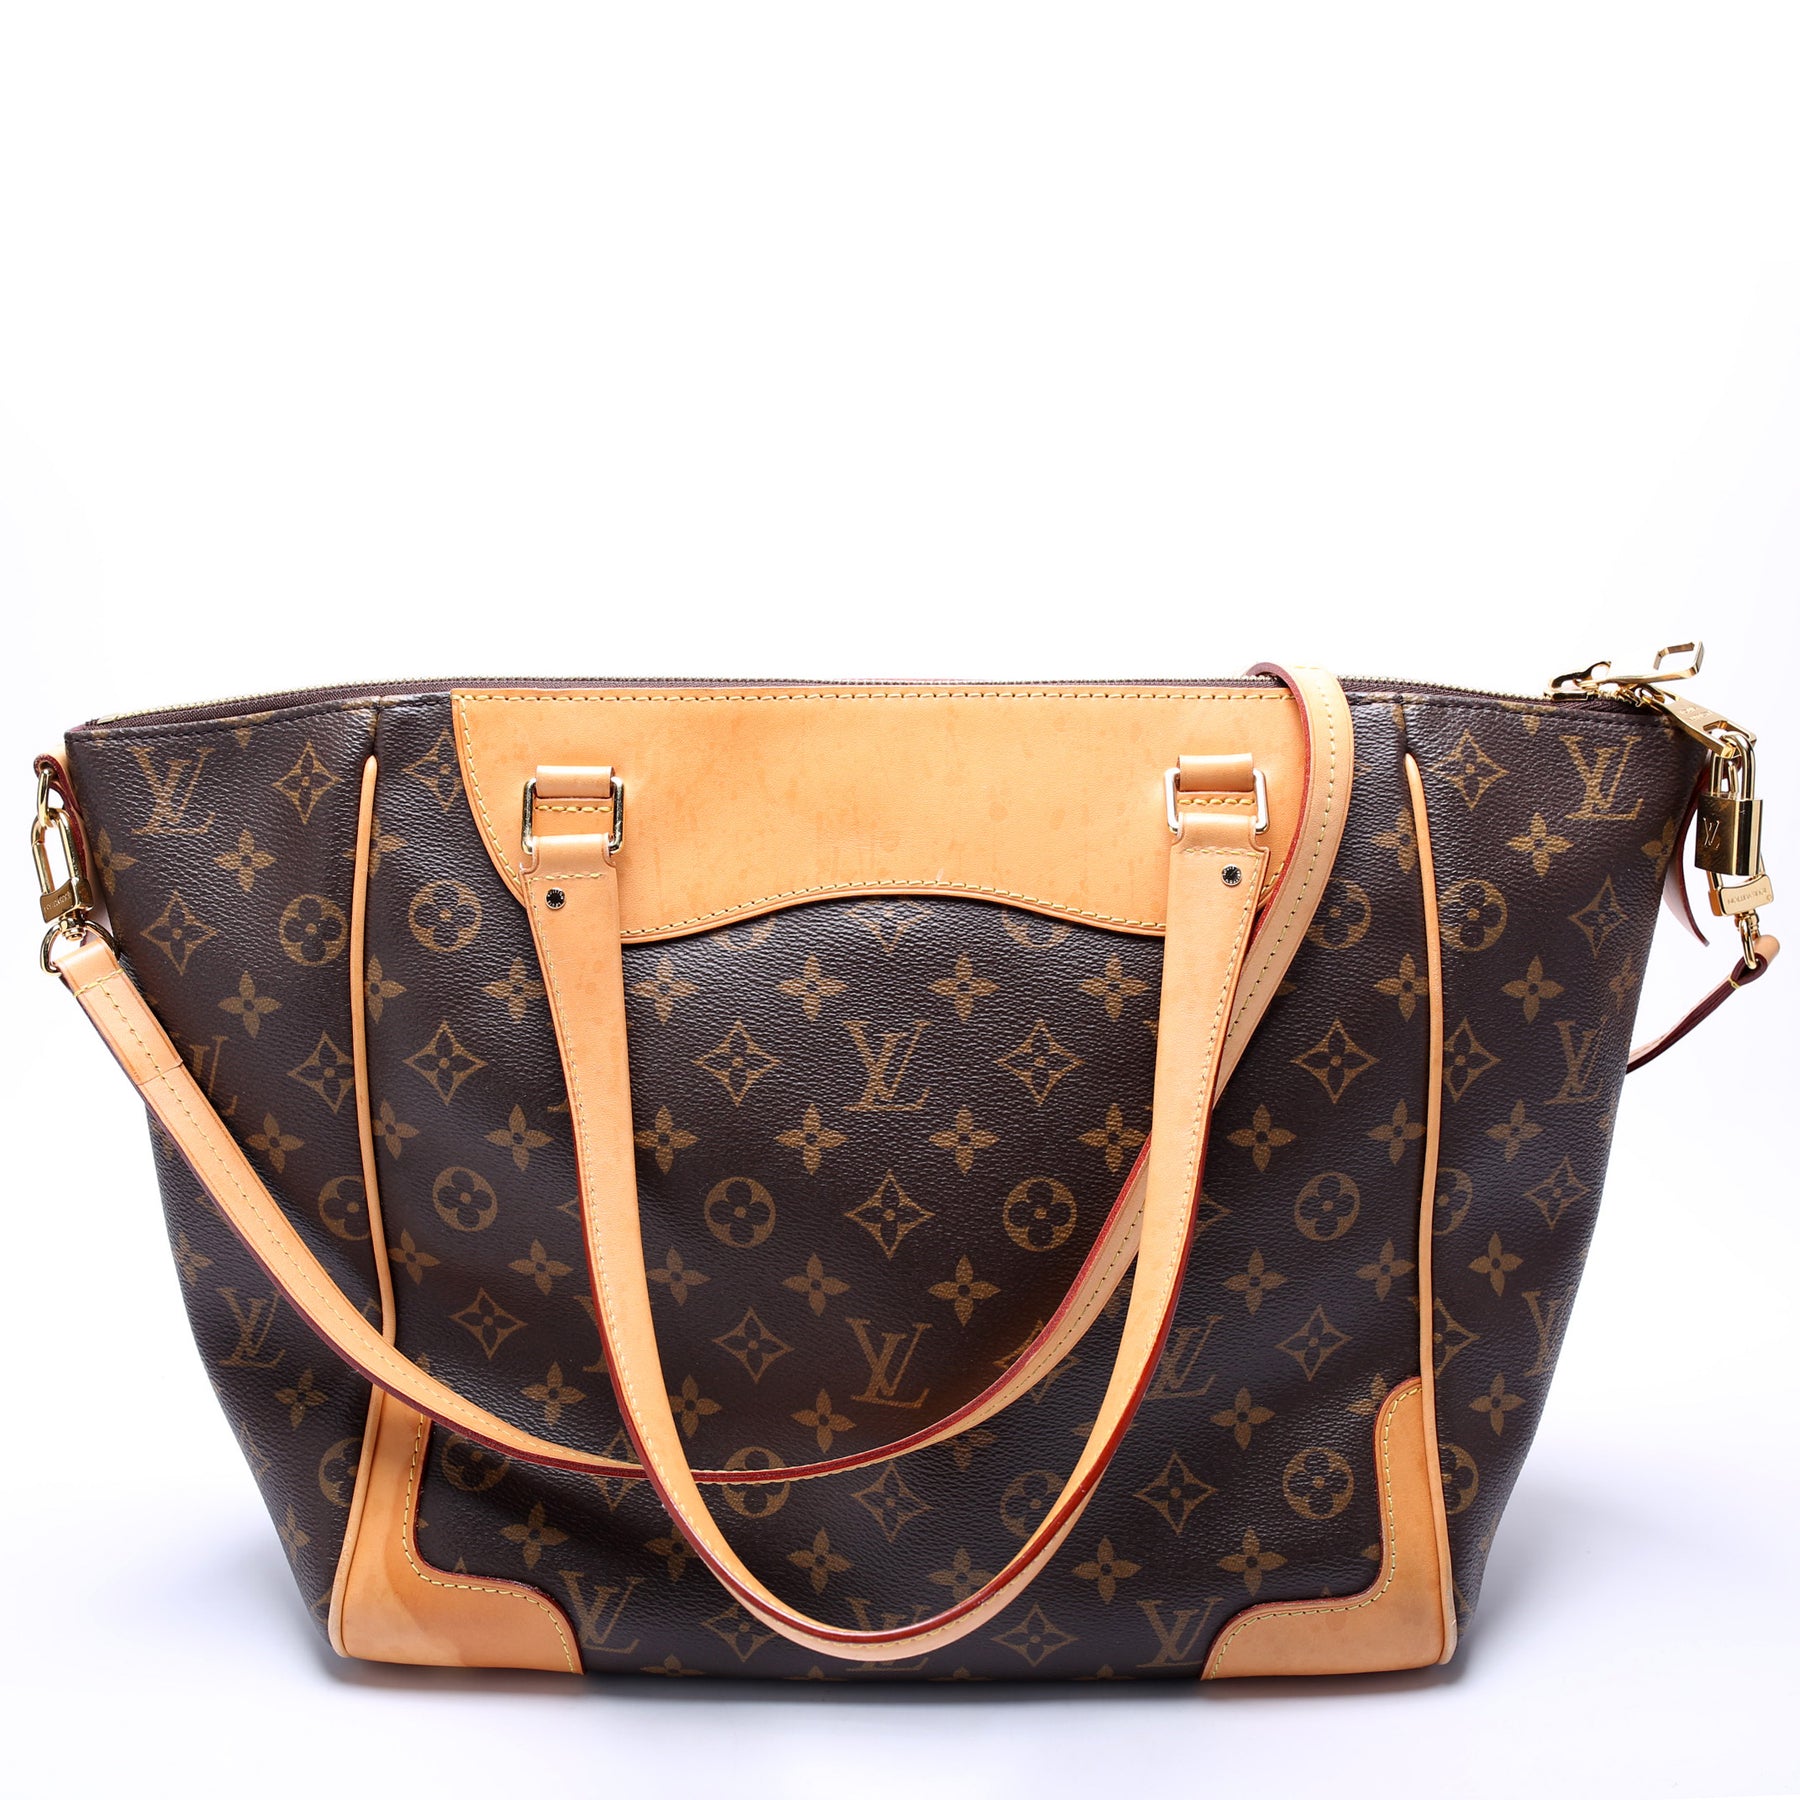 Louis Vuitton Estrela NM Handbag